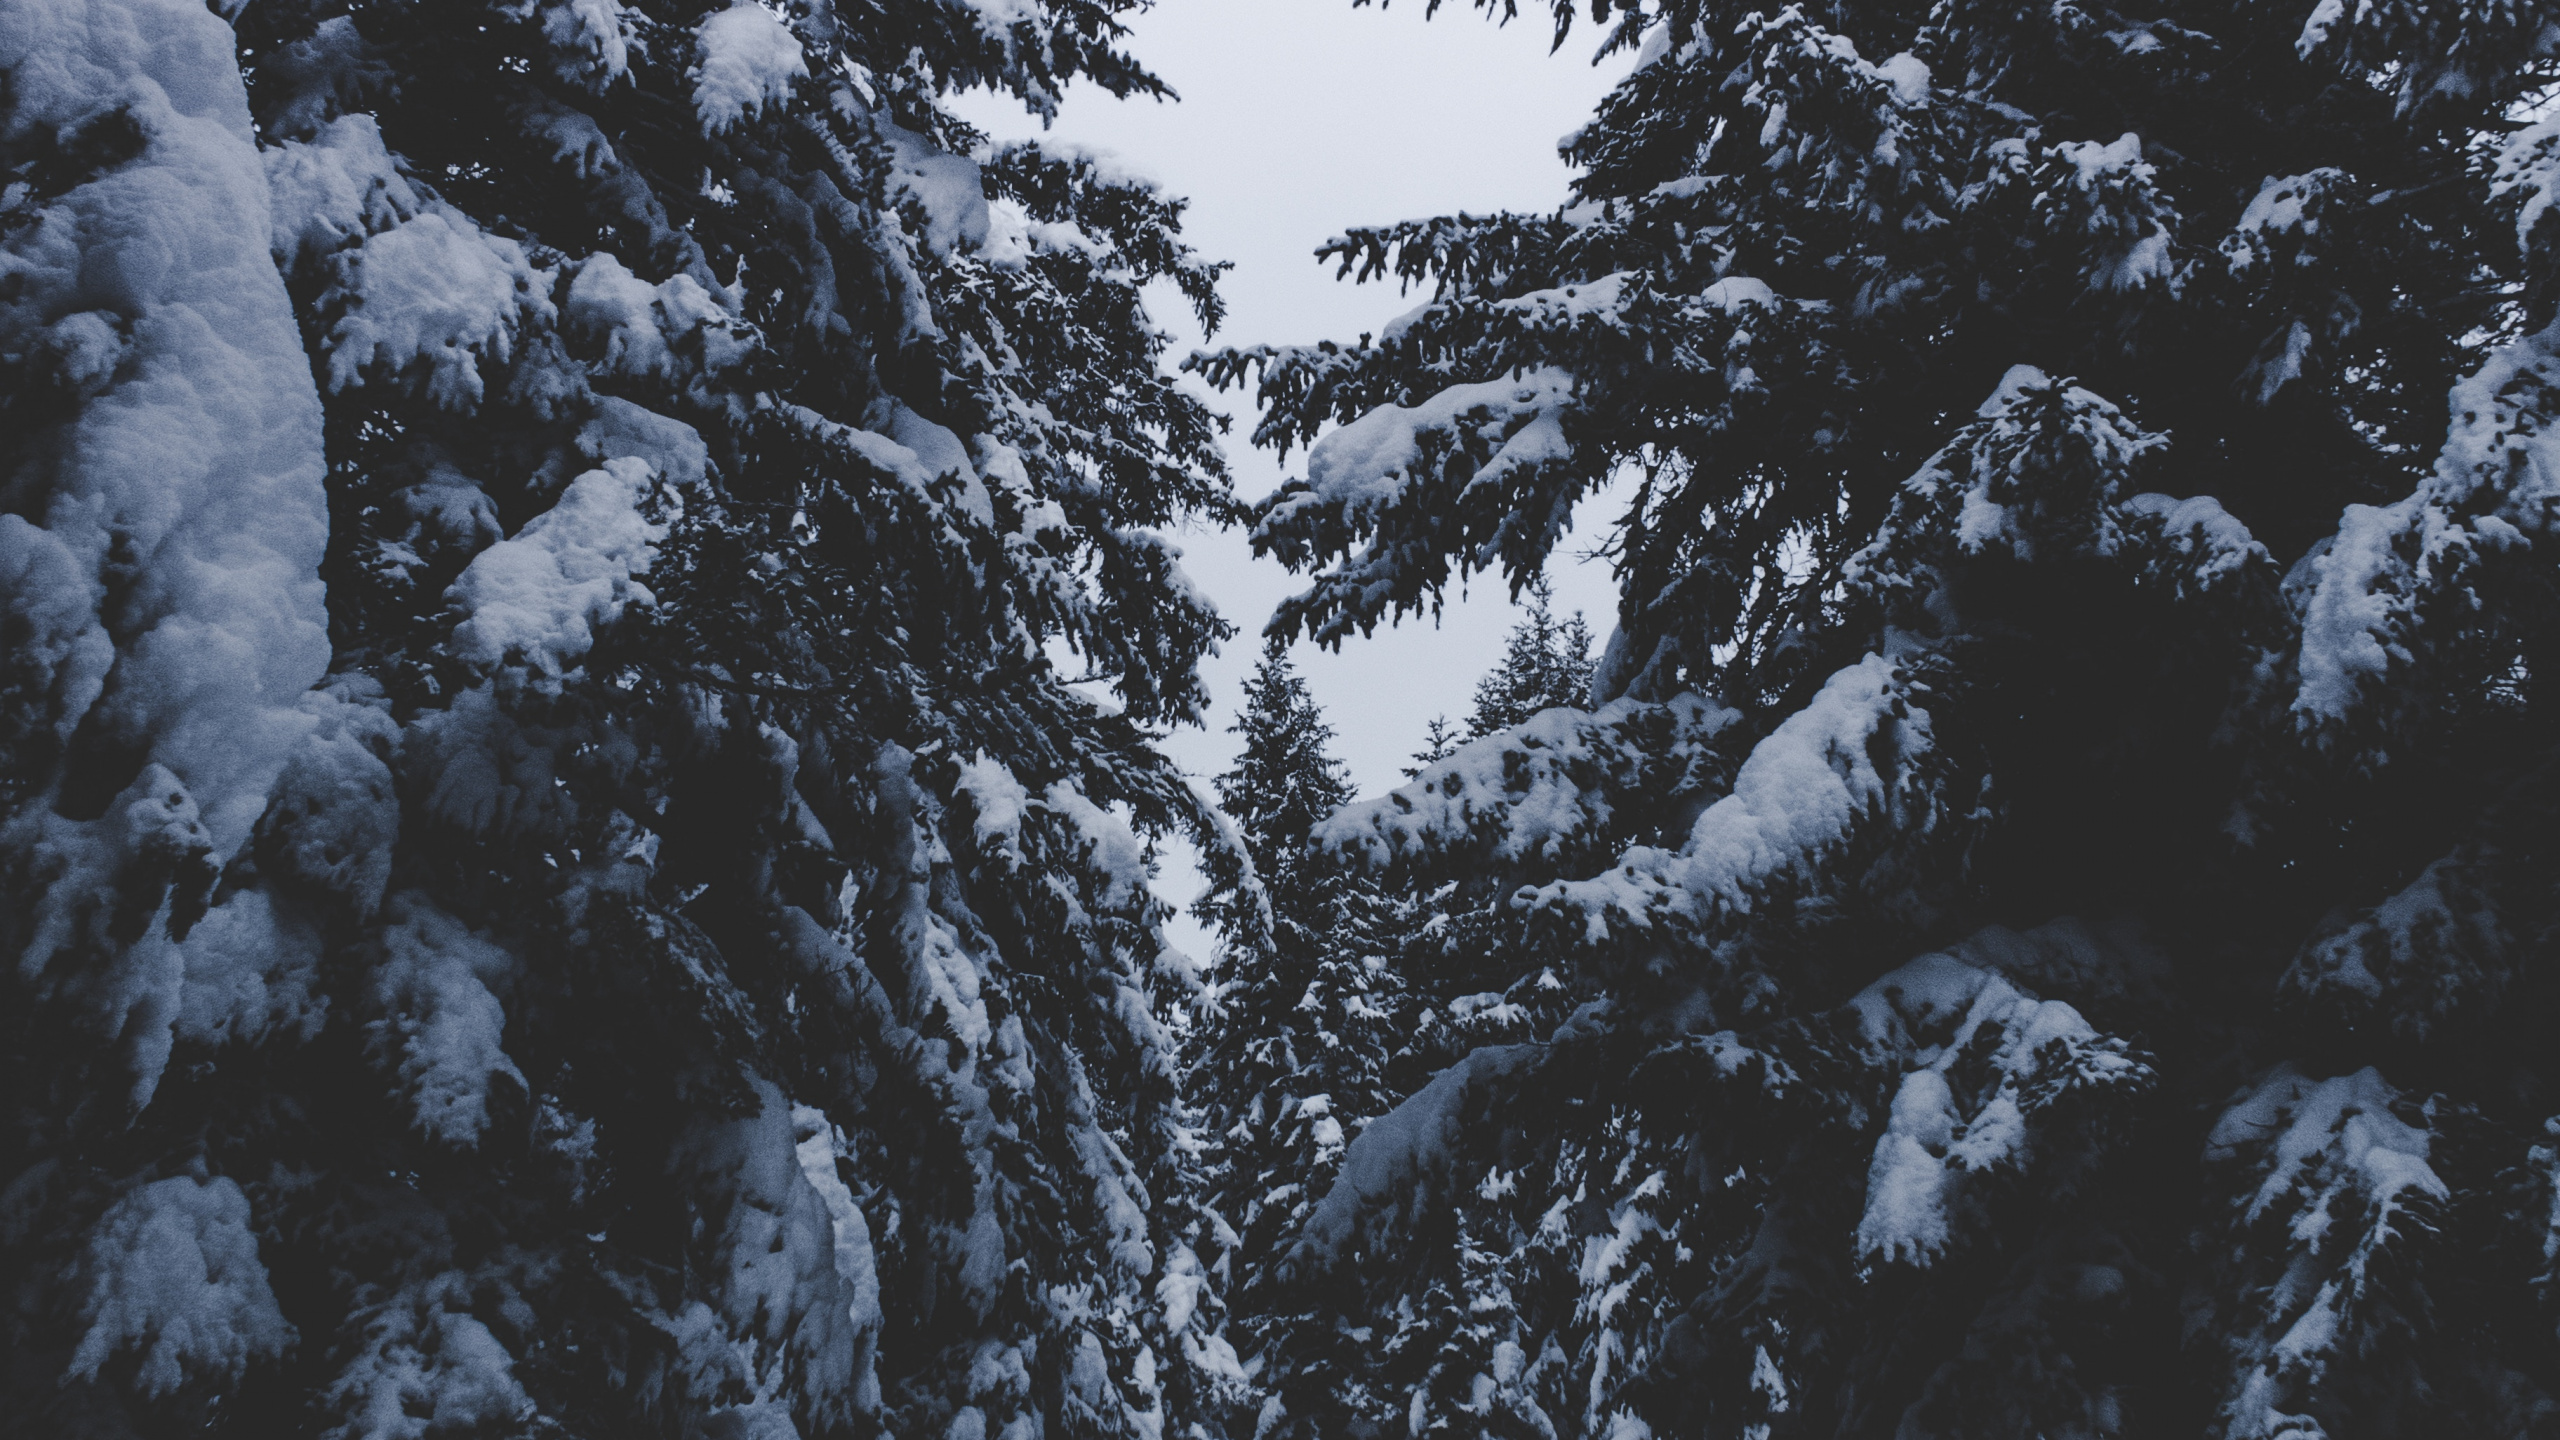 Nieve, Invierno, Congelación, Planta Leñosa, Abeto de Bosques de Abetos. Wallpaper in 2560x1440 Resolution